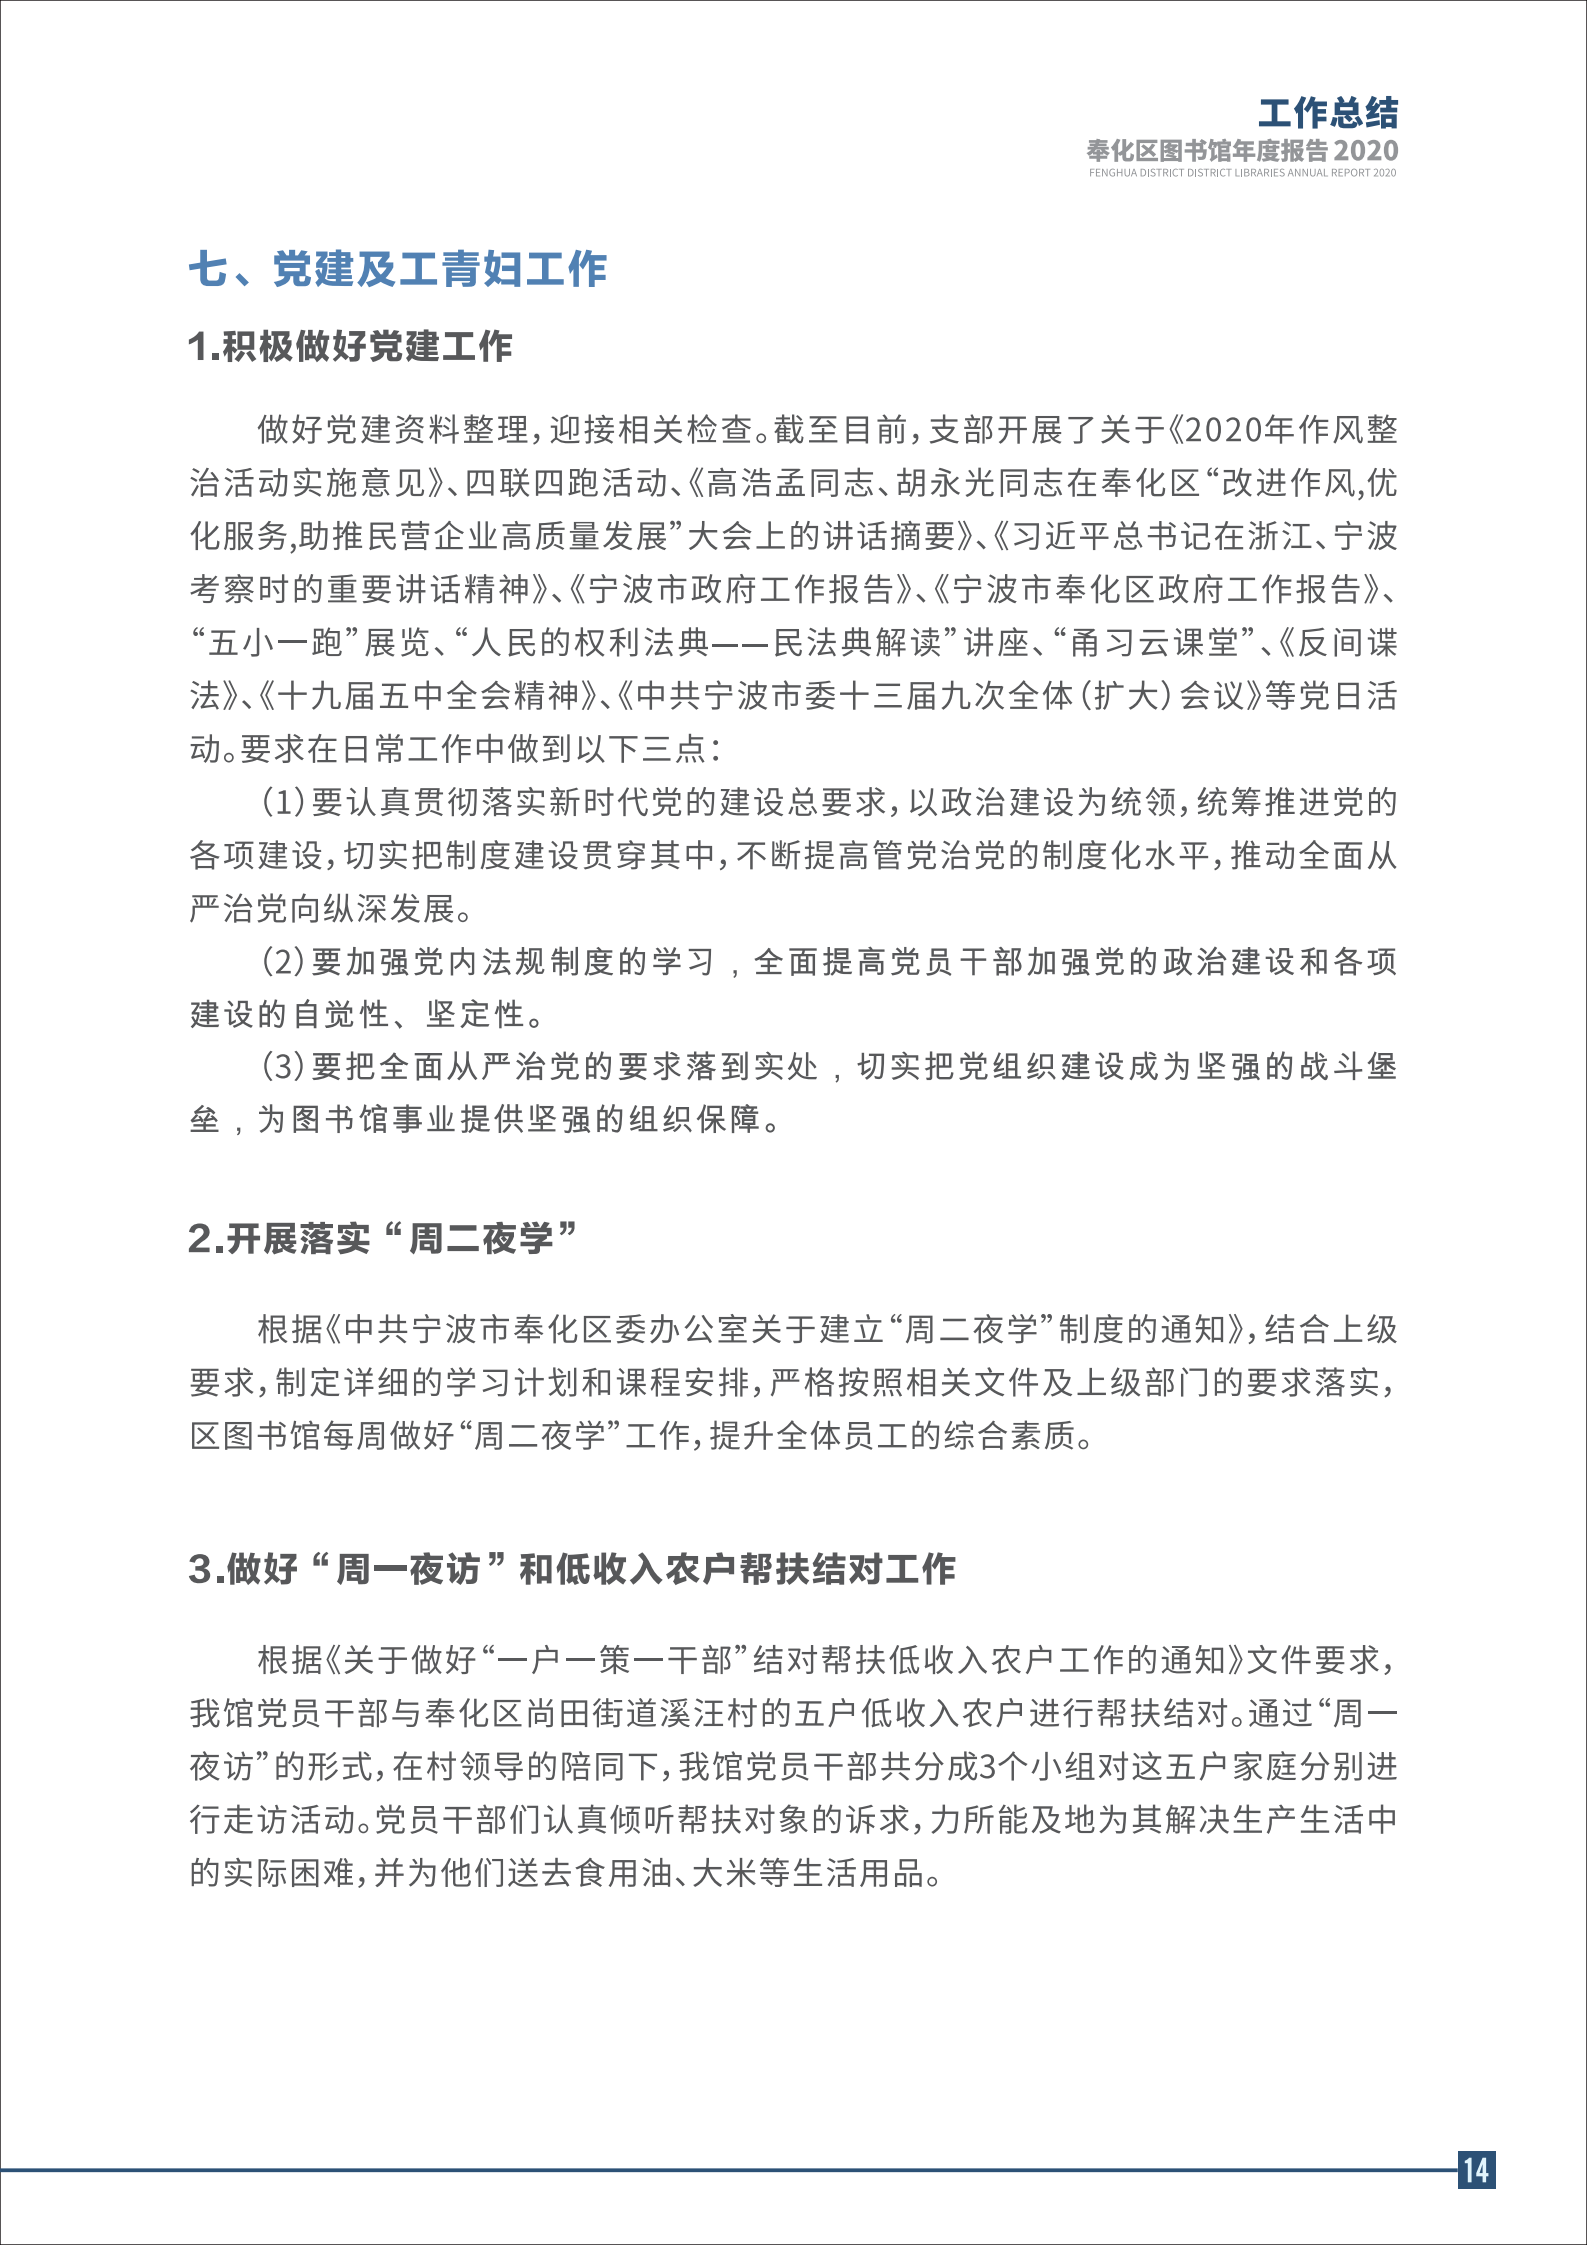 宁波市奉化区图书馆2020年年度报告 终稿_14.png